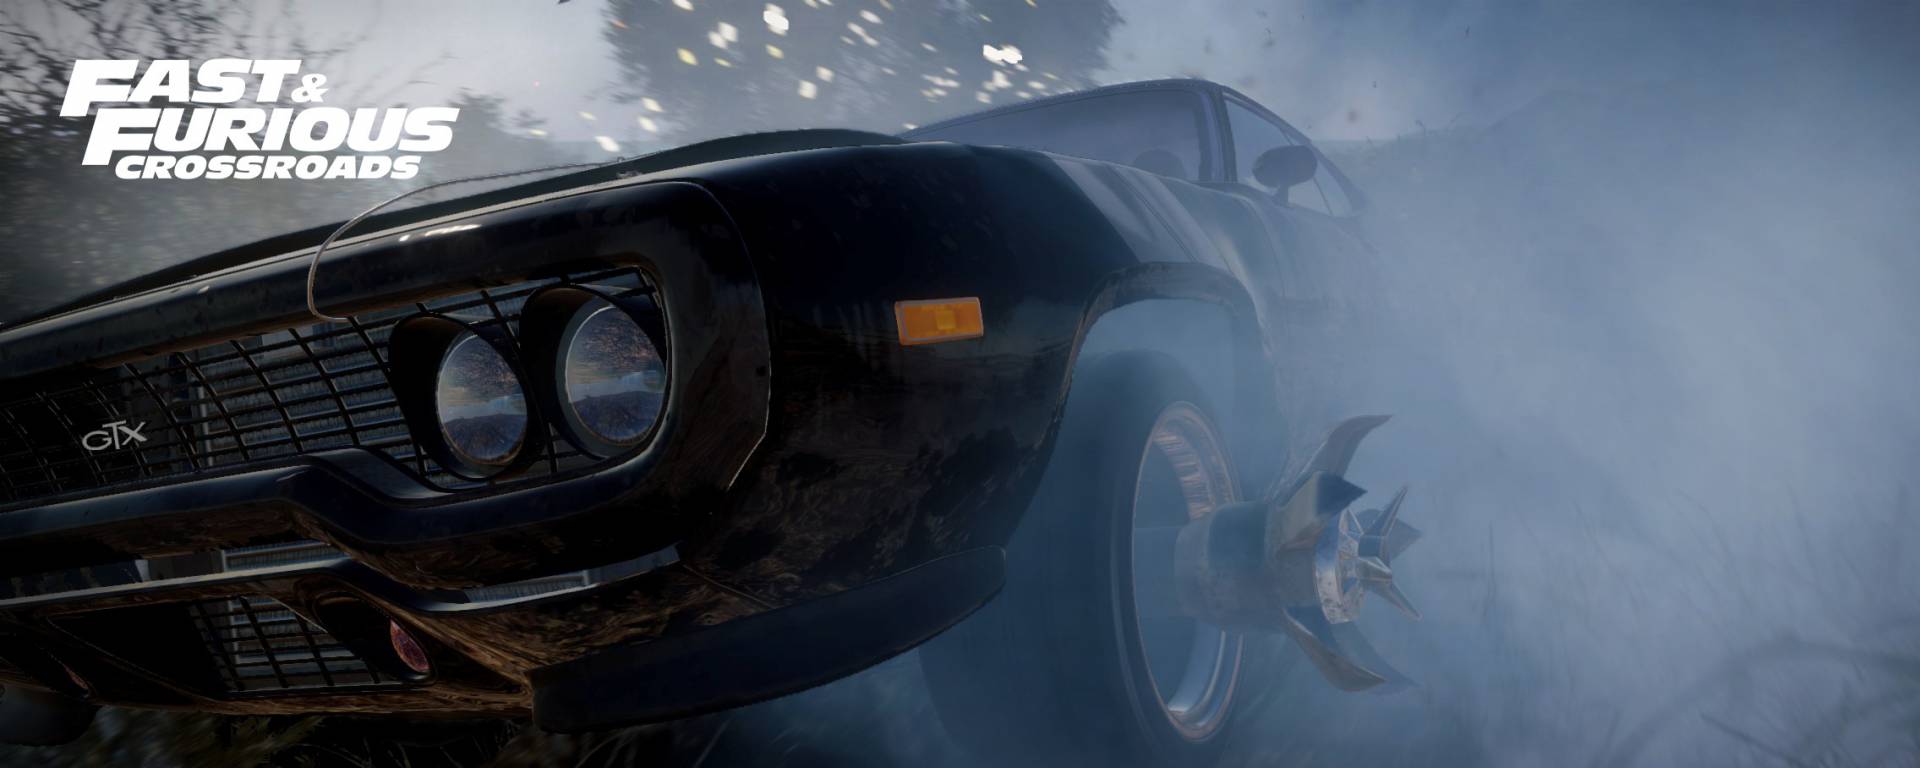 Fast & Furious Crossroads, czyli gra wideo na podstawie serii filmw, oficjalnie zapowiedziane